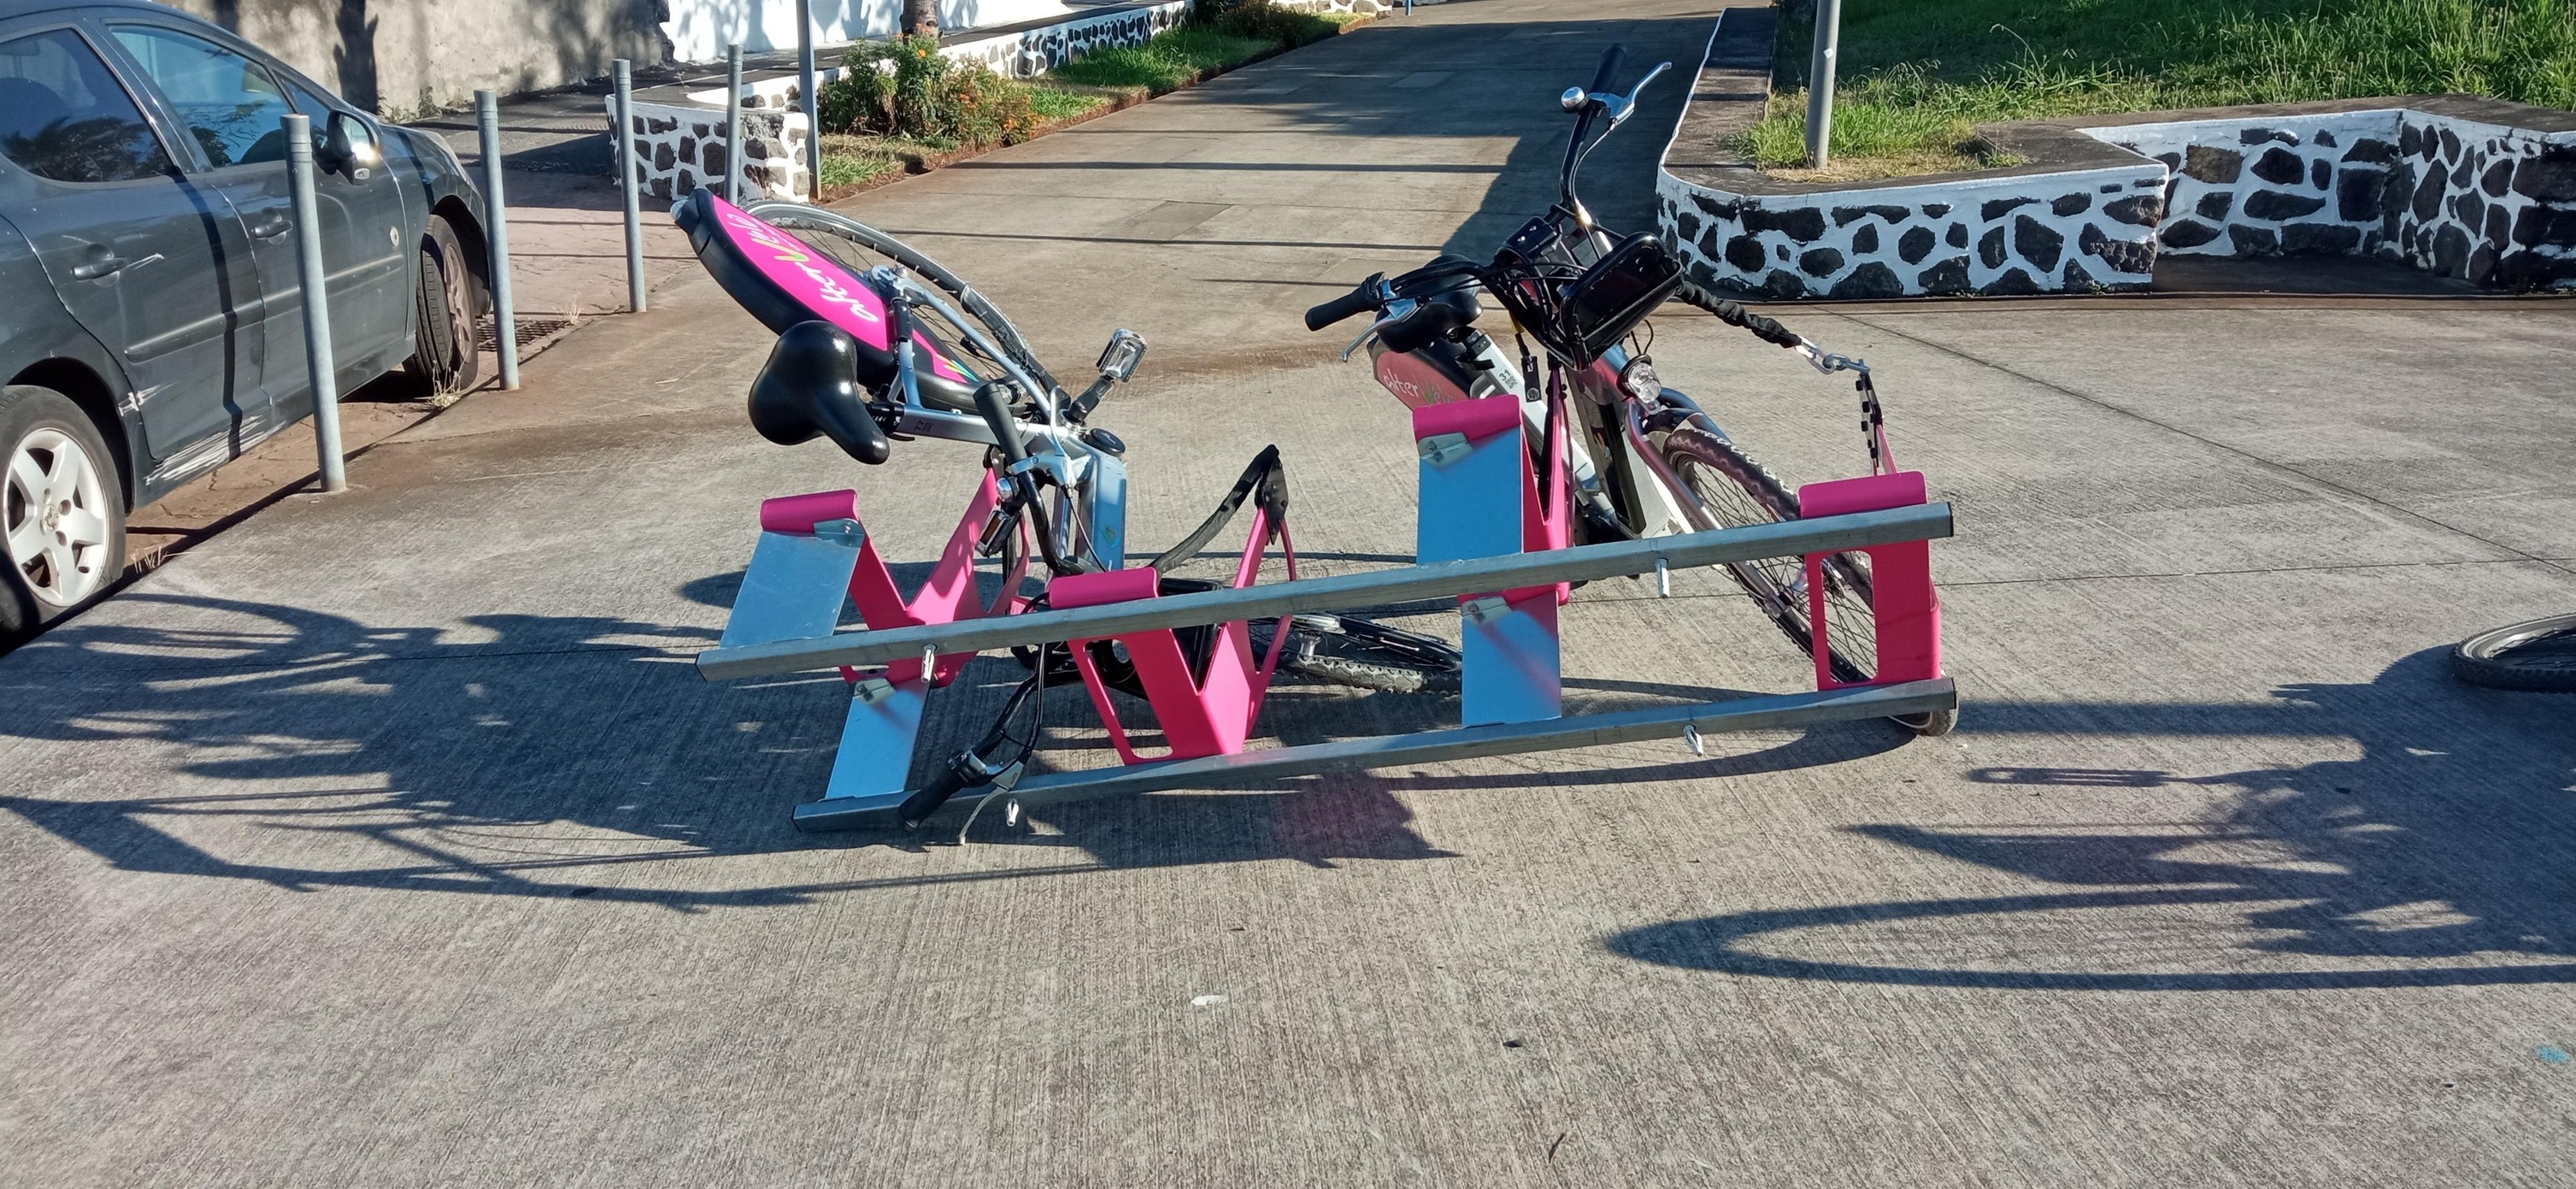 Saint-Pierre : Une station de vélo vandalisée